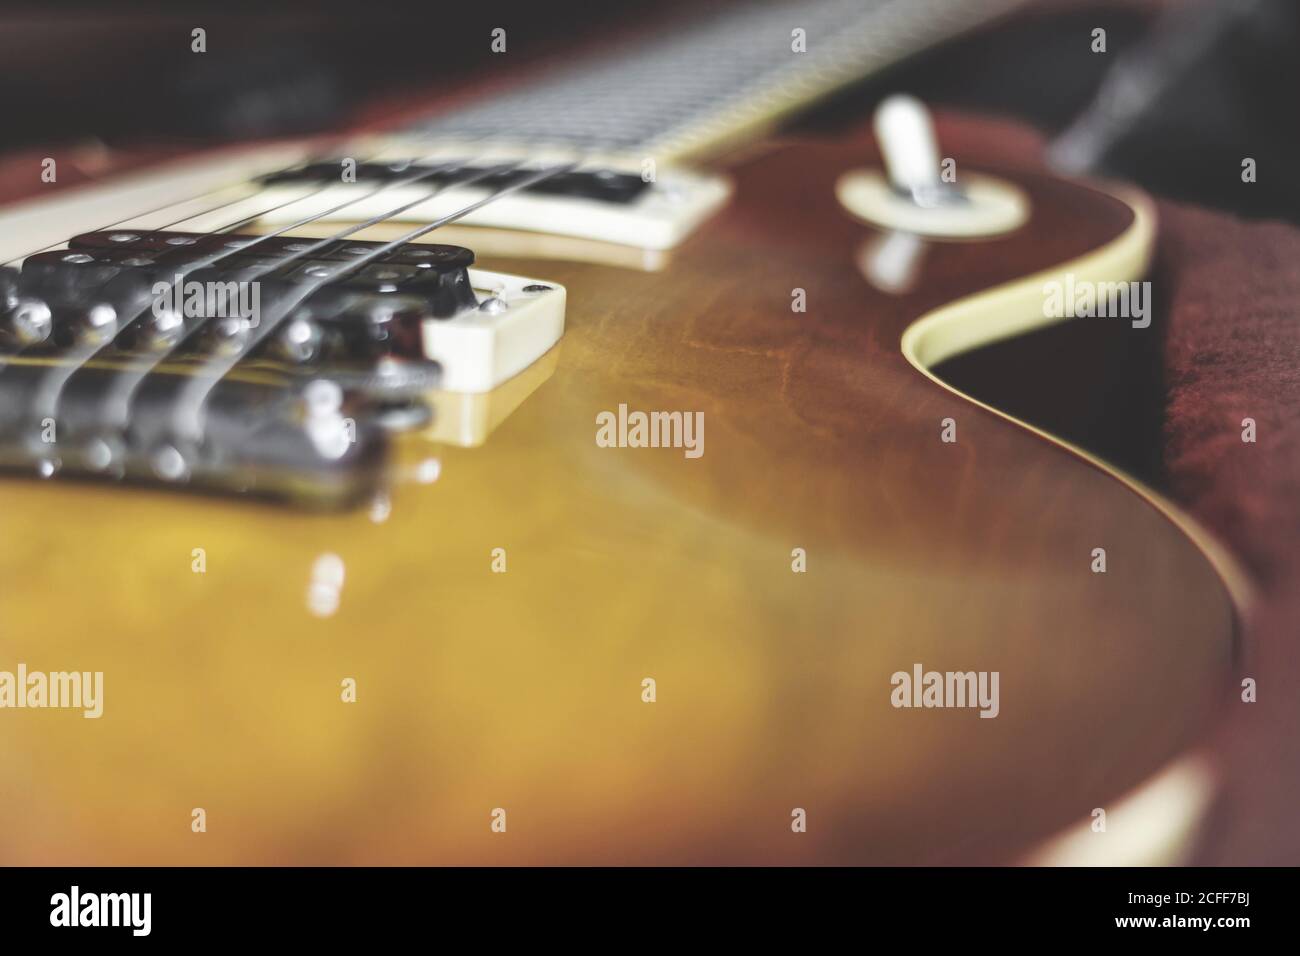 Modello Gibson Les Paul. Primo piano chitarra elettrica tono vintage.  Bergamo, ITALIA - 23 maggio 2015 Foto stock - Alamy